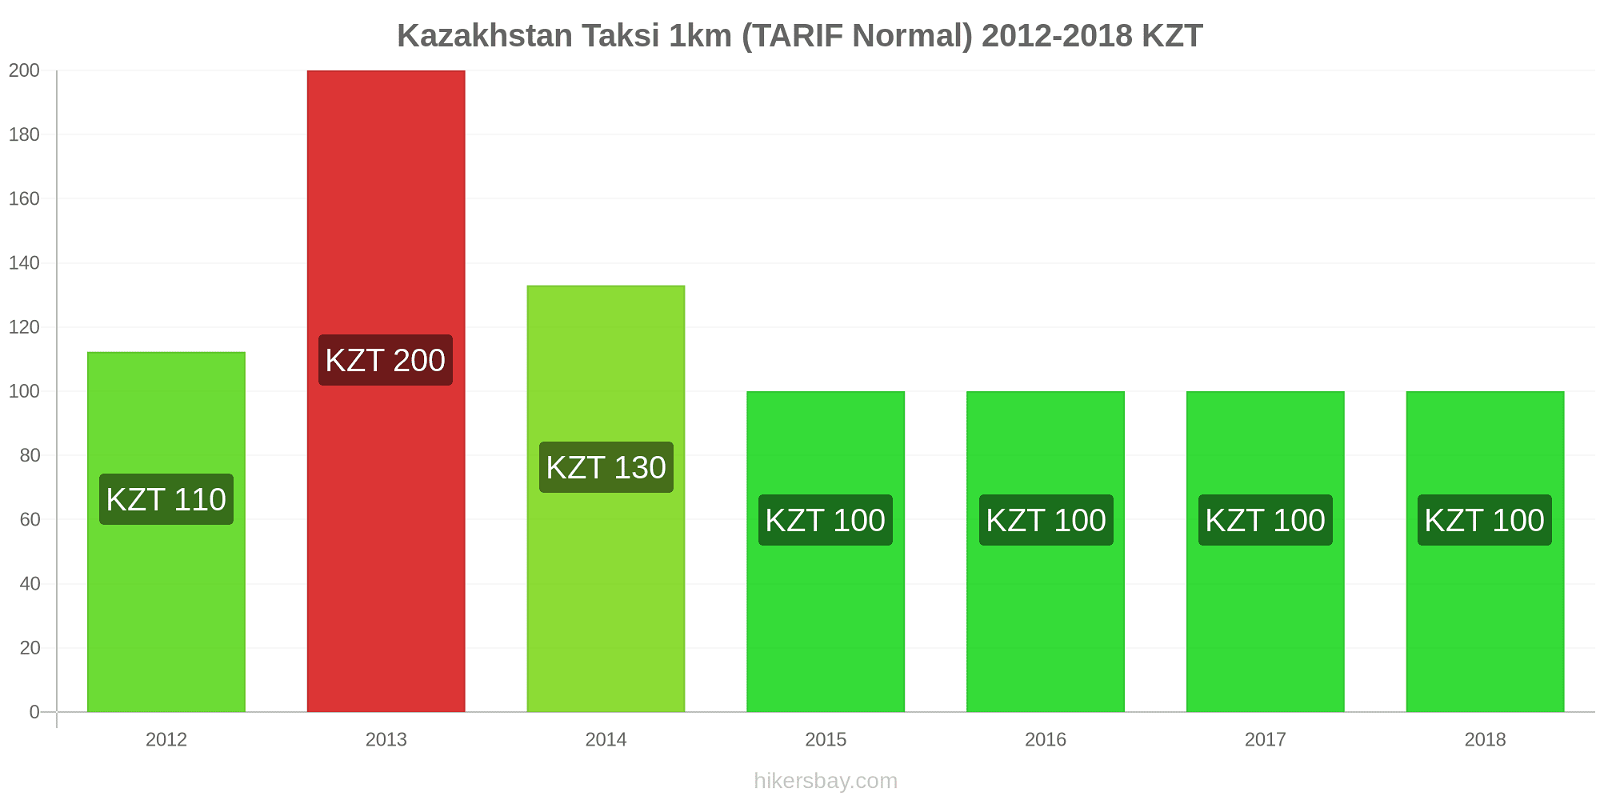 Kazakhstan perubahan harga Taksi 1km (Tarif Normal) hikersbay.com